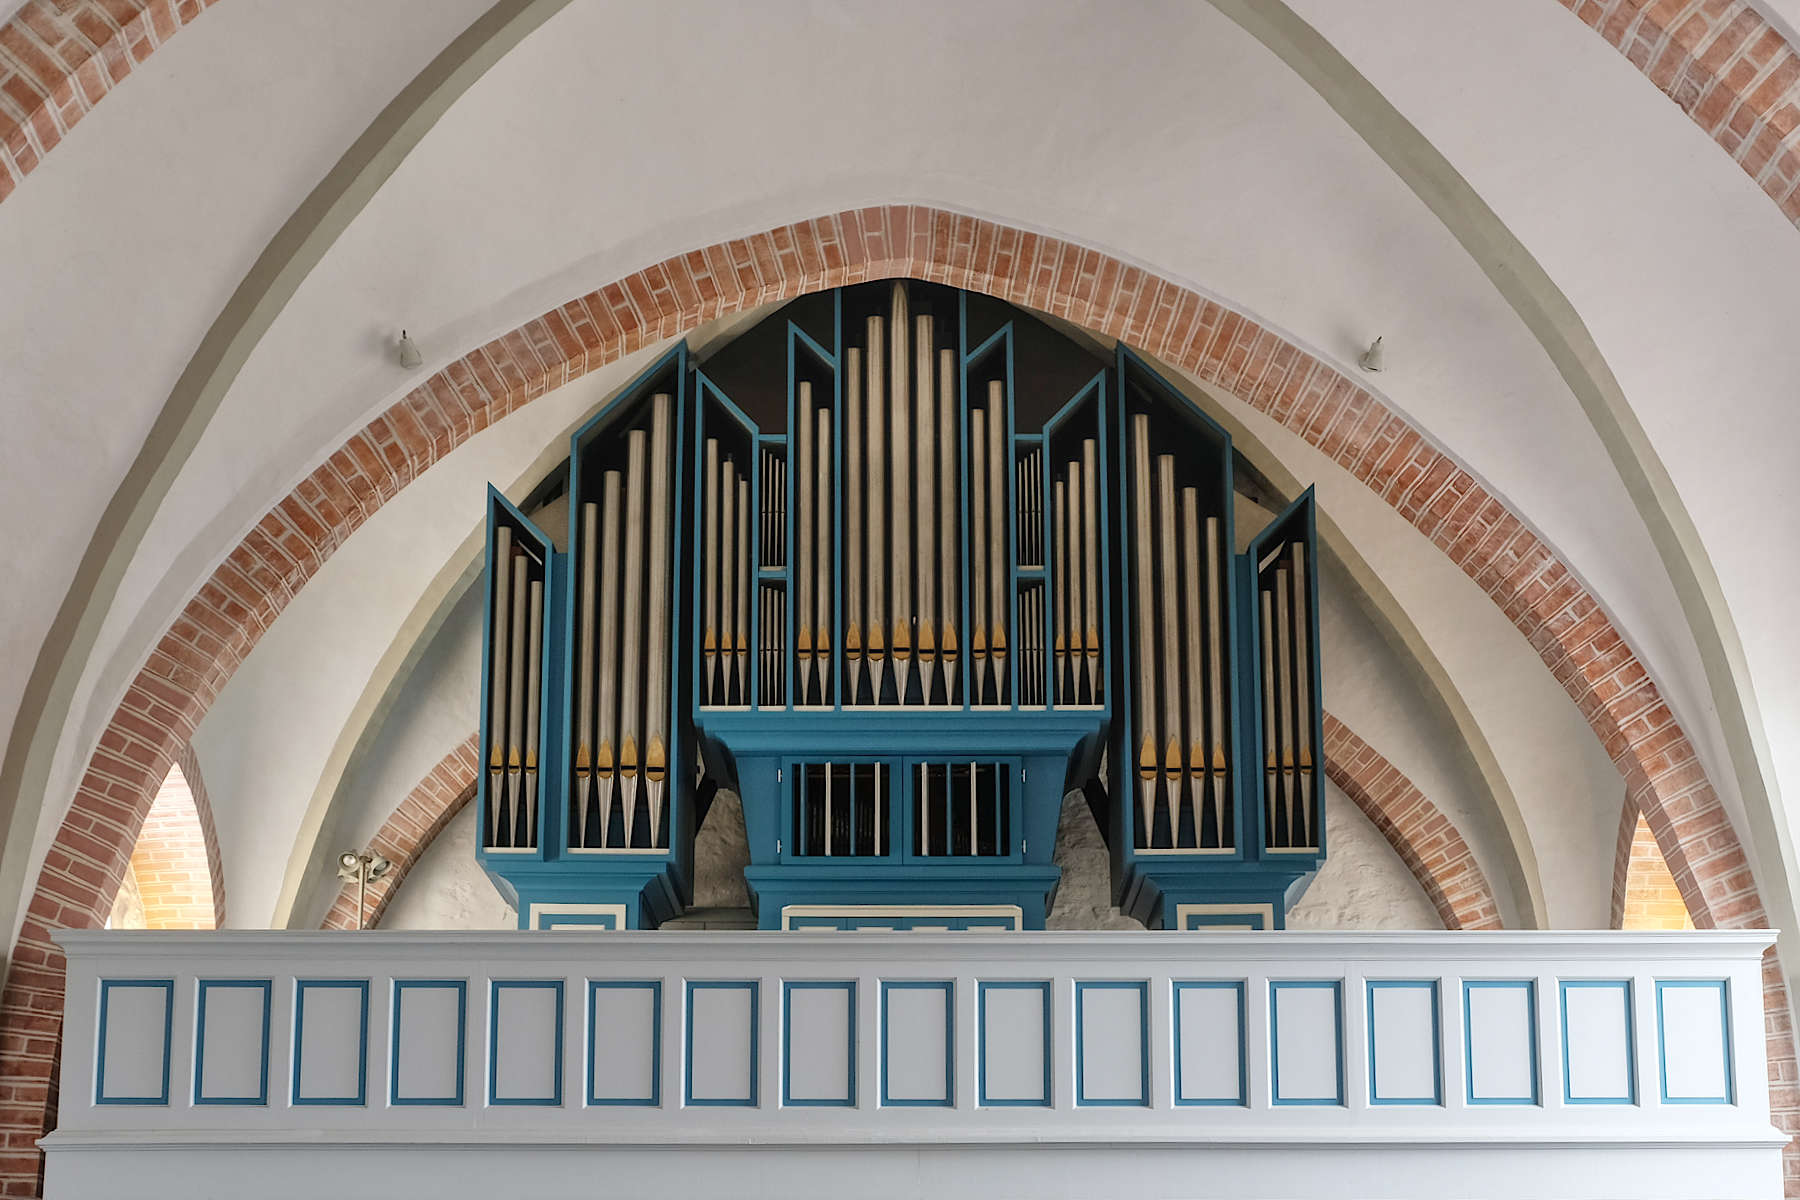 Orgel Achim